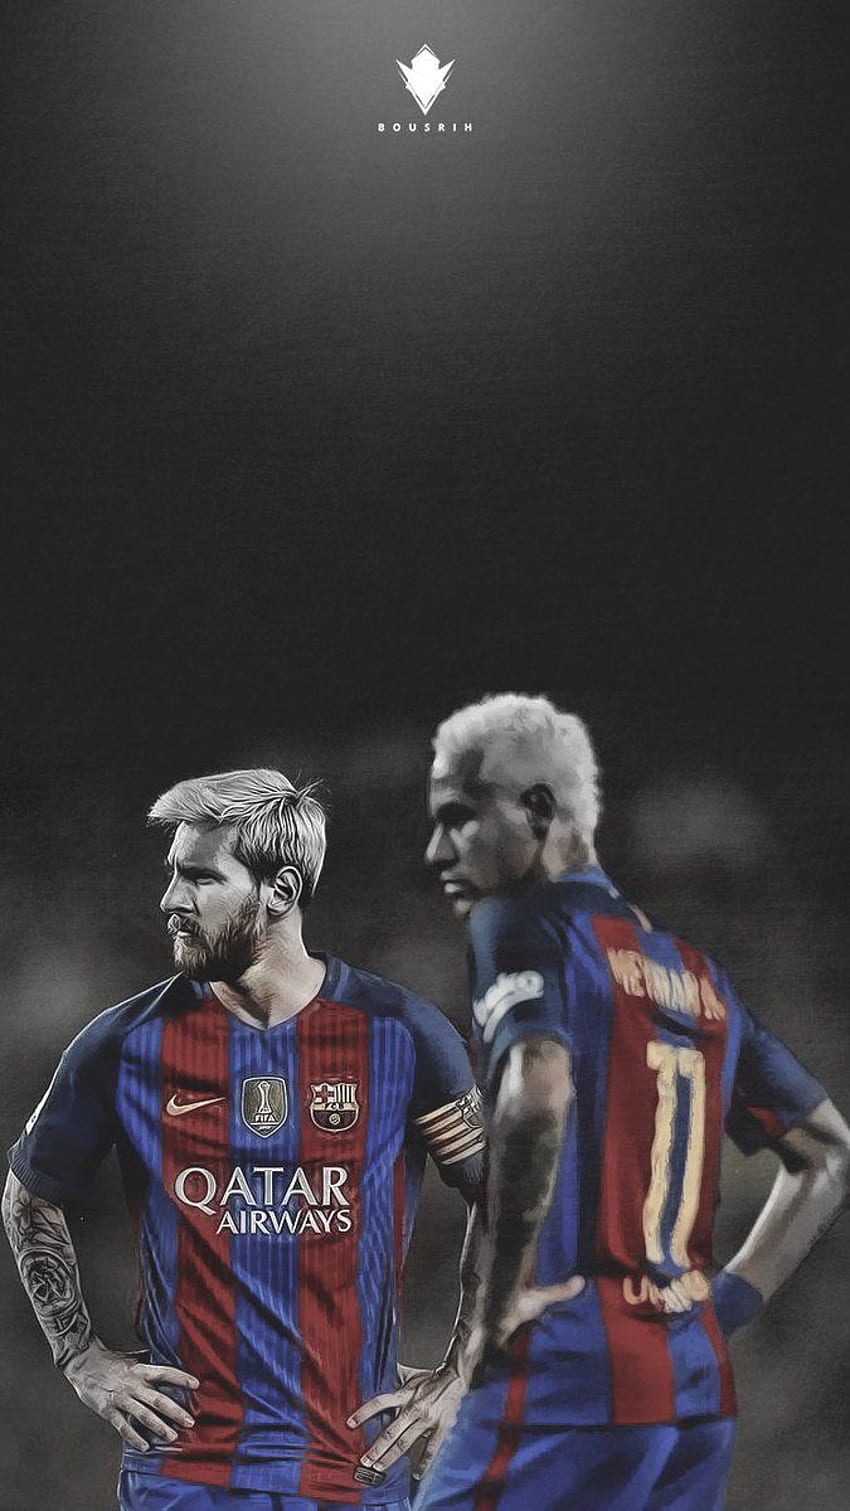 Nếu bạn là fan của Messi và Neymar, hãy tải ngay lockscreen đẹp lung linh này để thấy cặp đôi sáng giá trong mỗi lần mở khóa điện thoại của mình. Đảm bảo sẽ khiến người khác trầm trồ ngưỡng mộ khi nhìn thấy thiết bị của bạn.